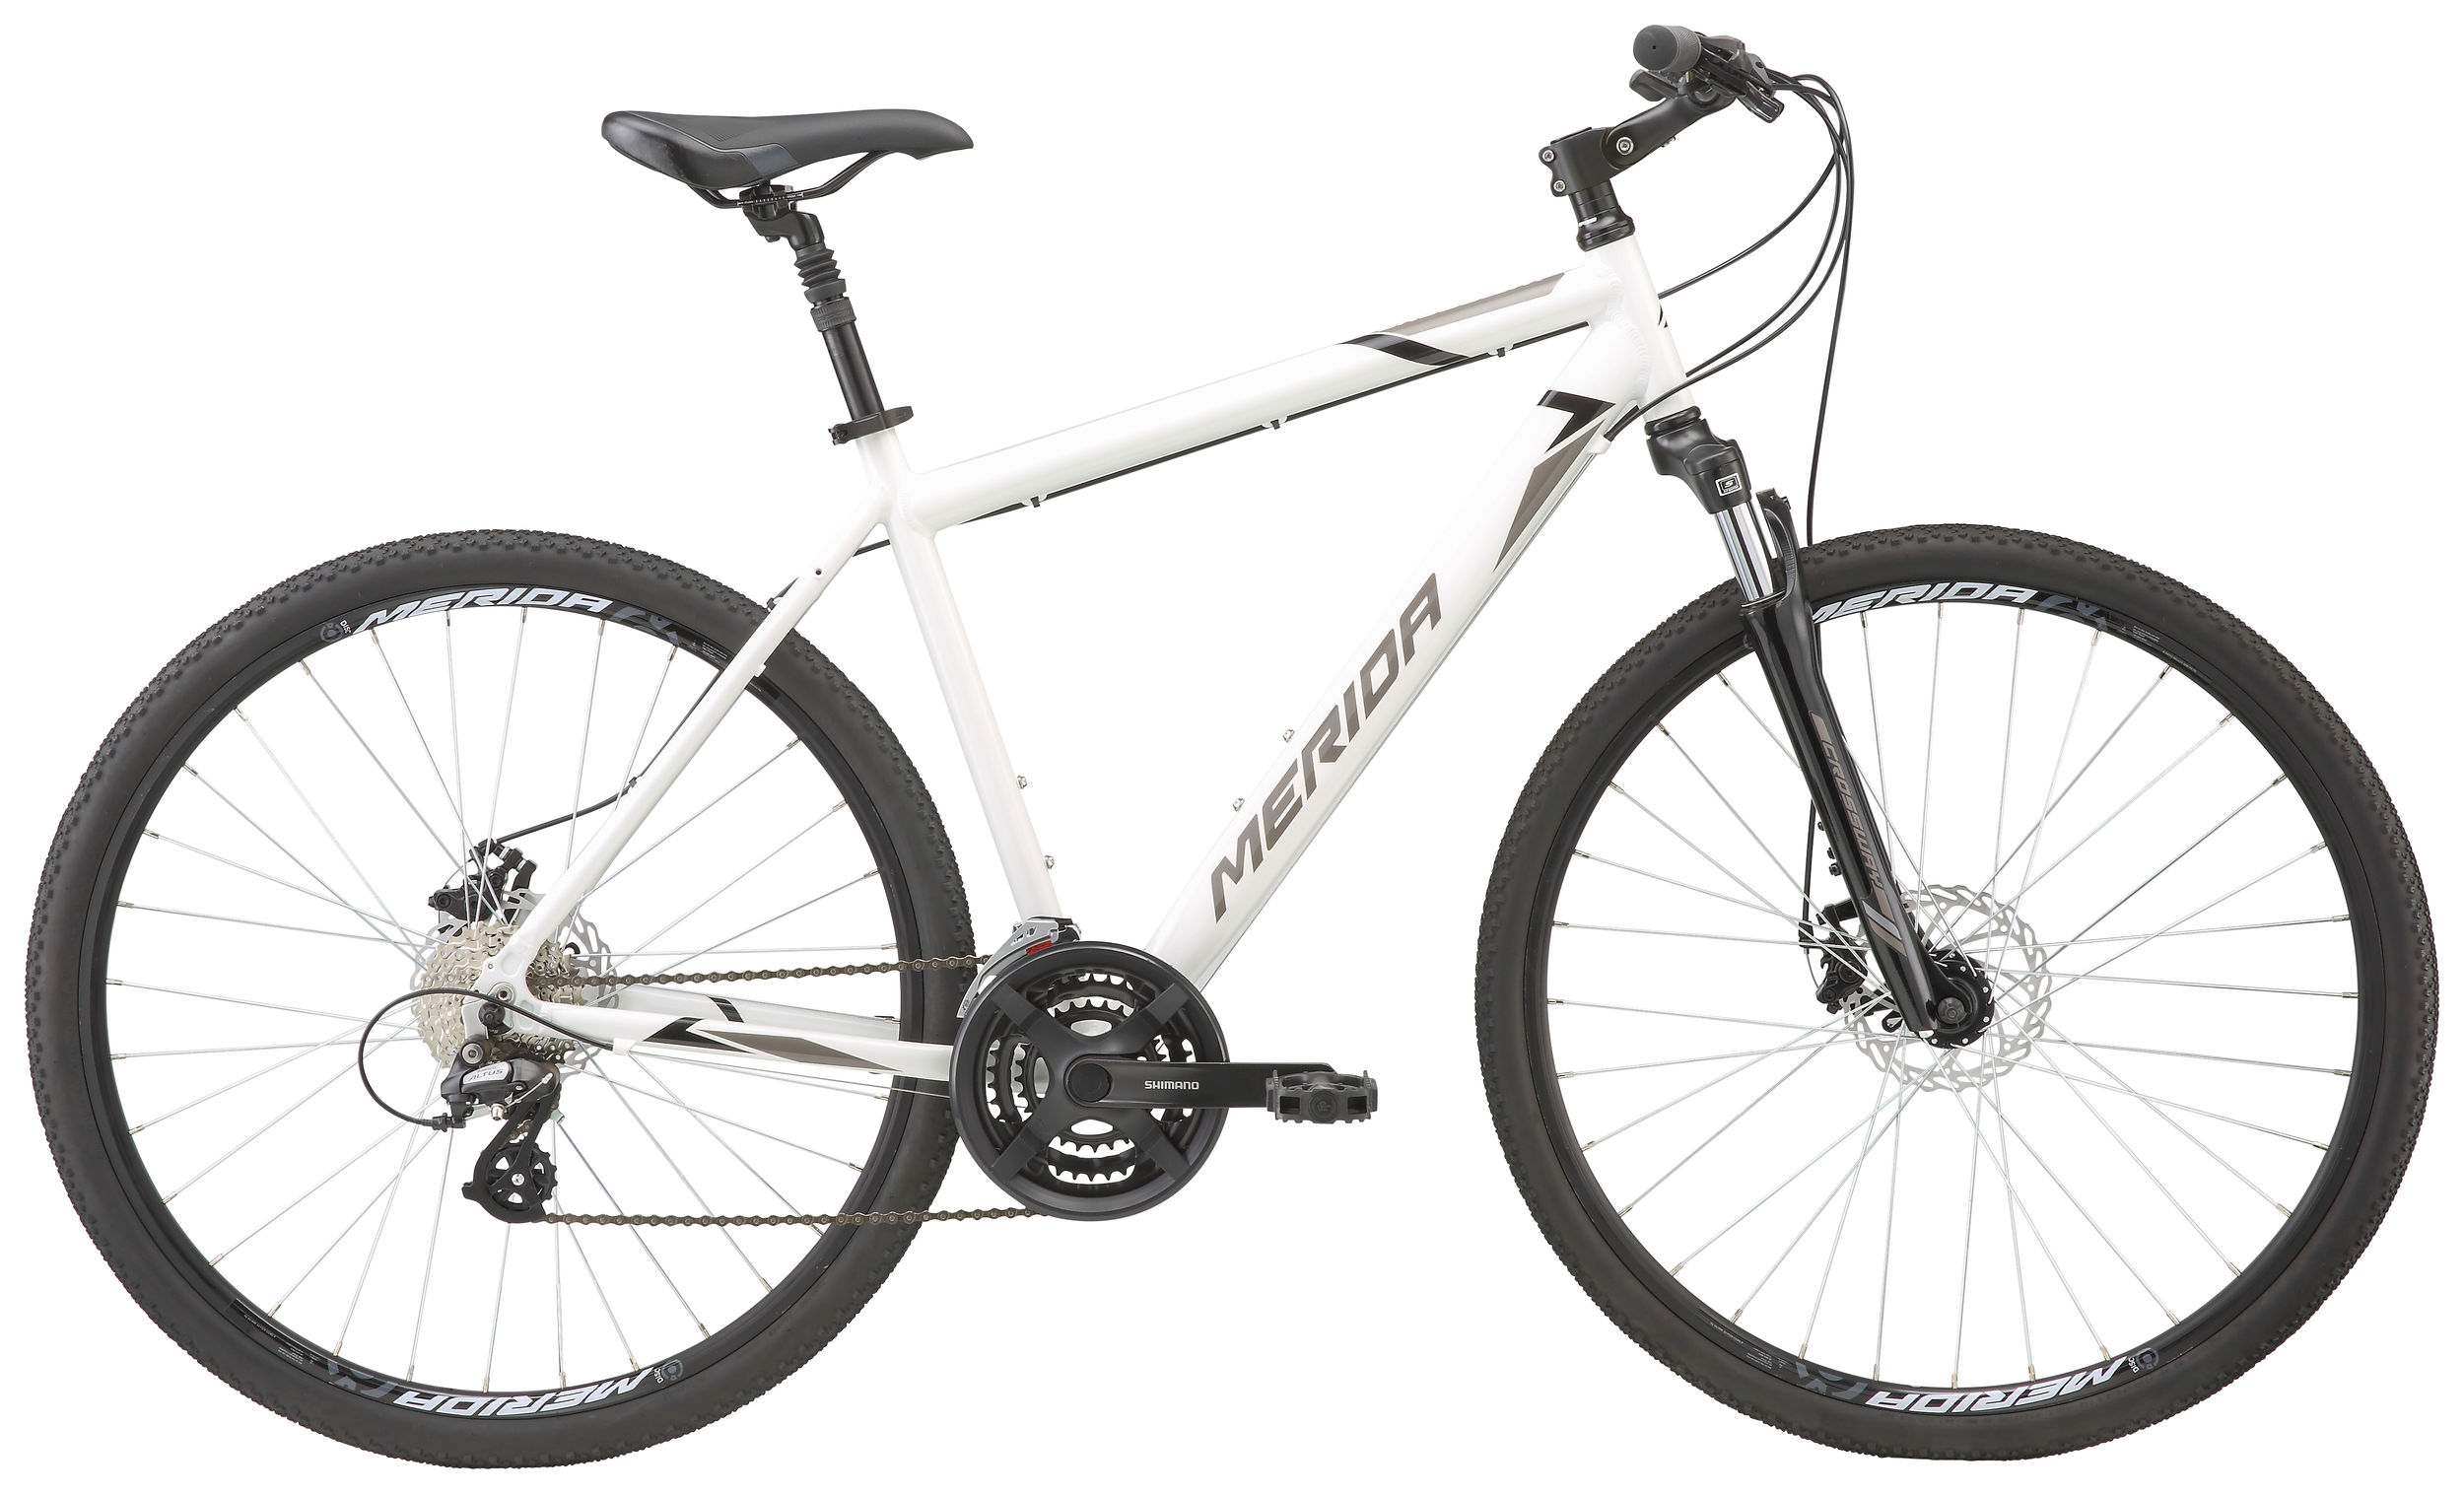  Отзывы о Городском велосипеде Merida Crossway 15-MD 2020